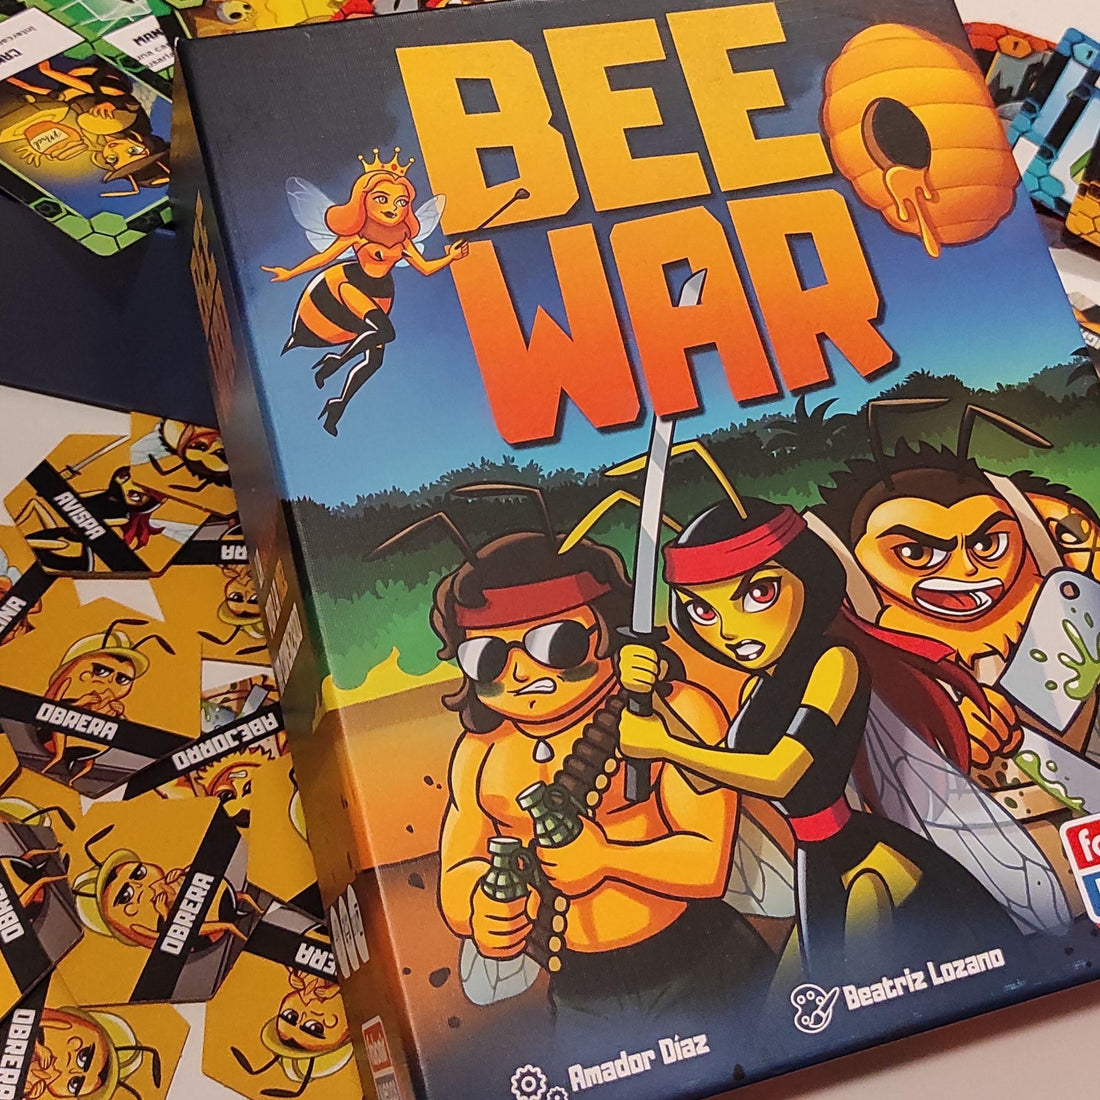 Bee War - Un juego estratégico lleno de vuelos - Falomir ¿Conoces uno de los últimos lanzamientos de Falomir Juegos llamado "Bee War" 🐝 ? Si no lo conoces y te apetece descubrirlo sigue leyendo.Bee War es un juego muy estratégico de Amador Díaz e ilustra